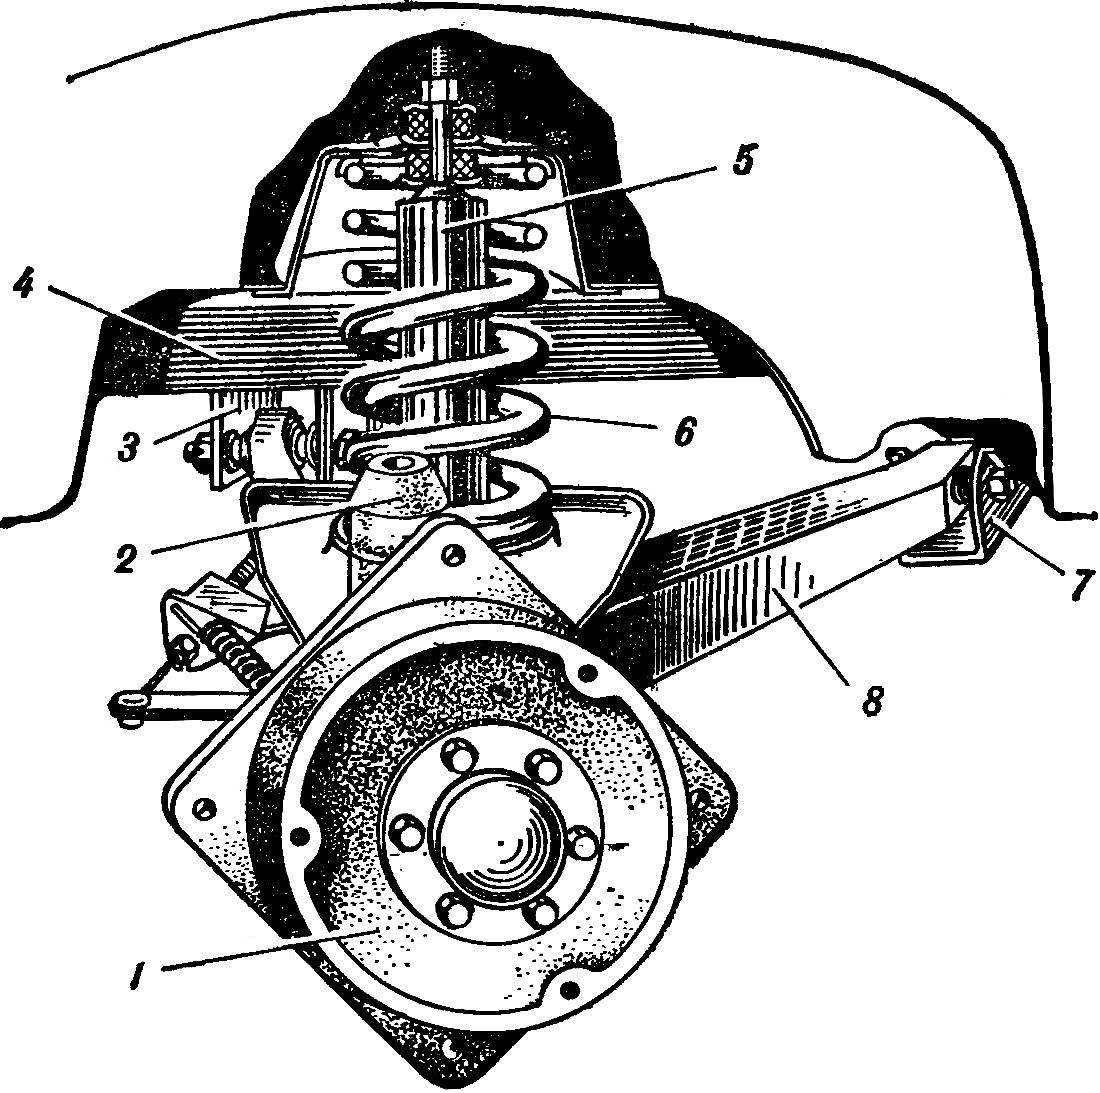 Fig. 7. Rear suspension